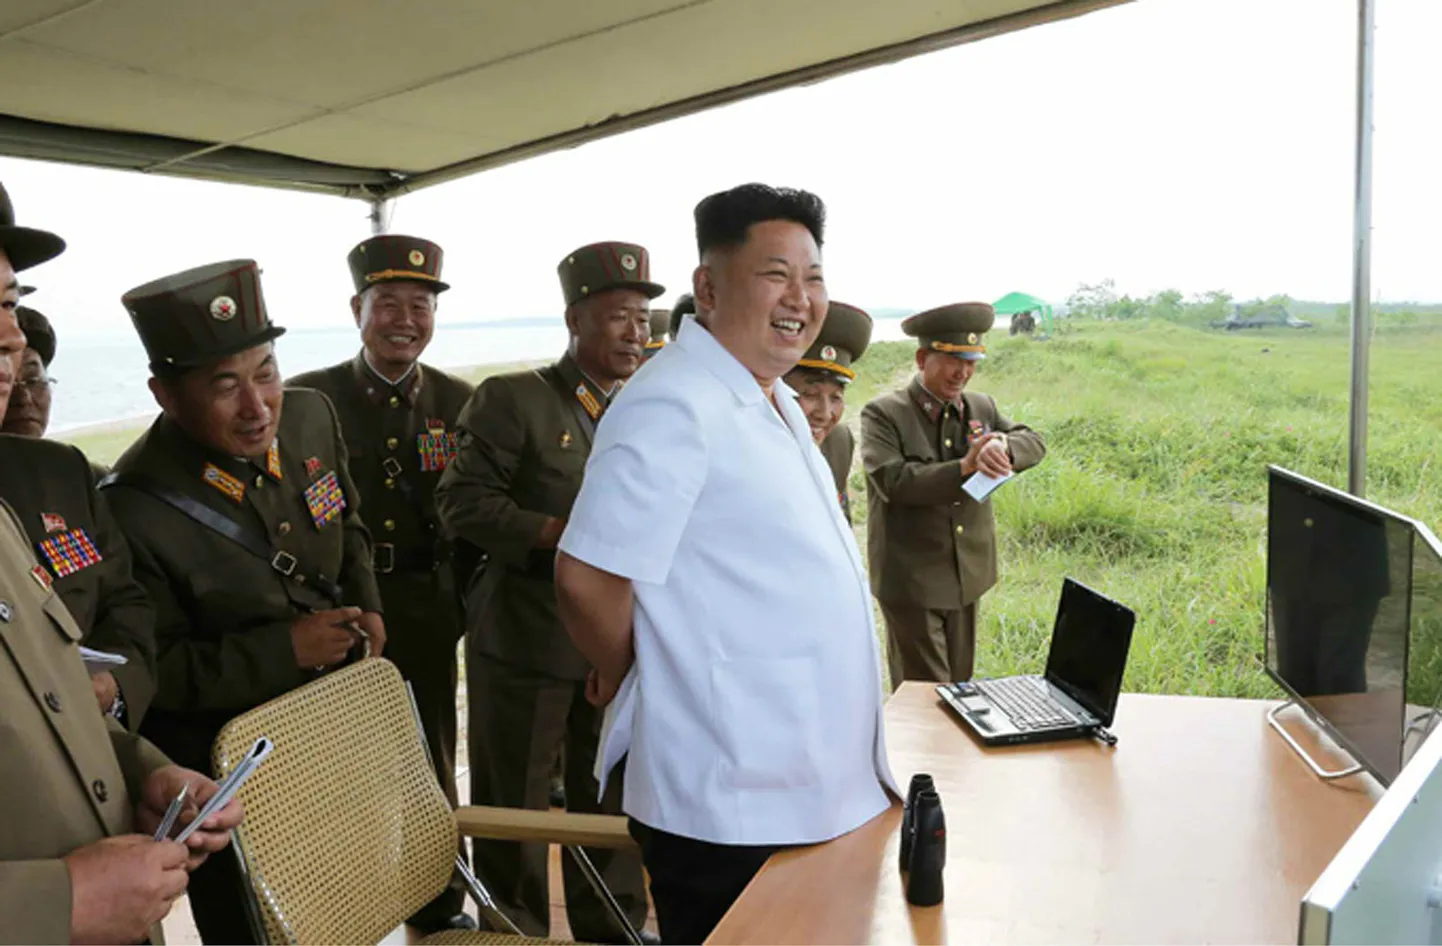 Põhja-Korea ametliku uudisteagentuuri foto raketikatsetust jälgivast Kim jong-unist.